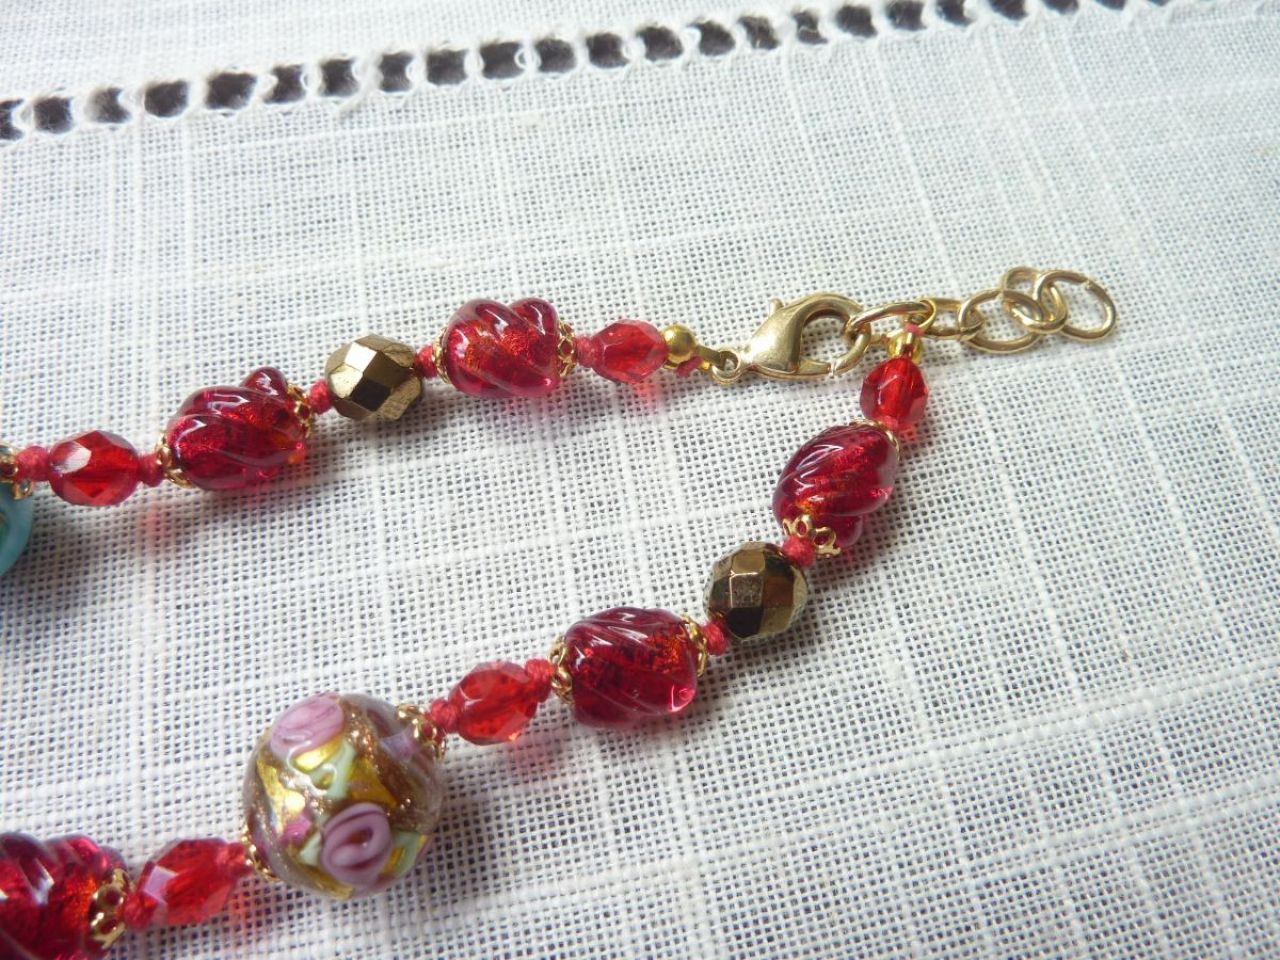 coller avec perles en verre de murano fait main, composition de perles rouges et perles multicolores travaillées " fiorato venezi
ano"